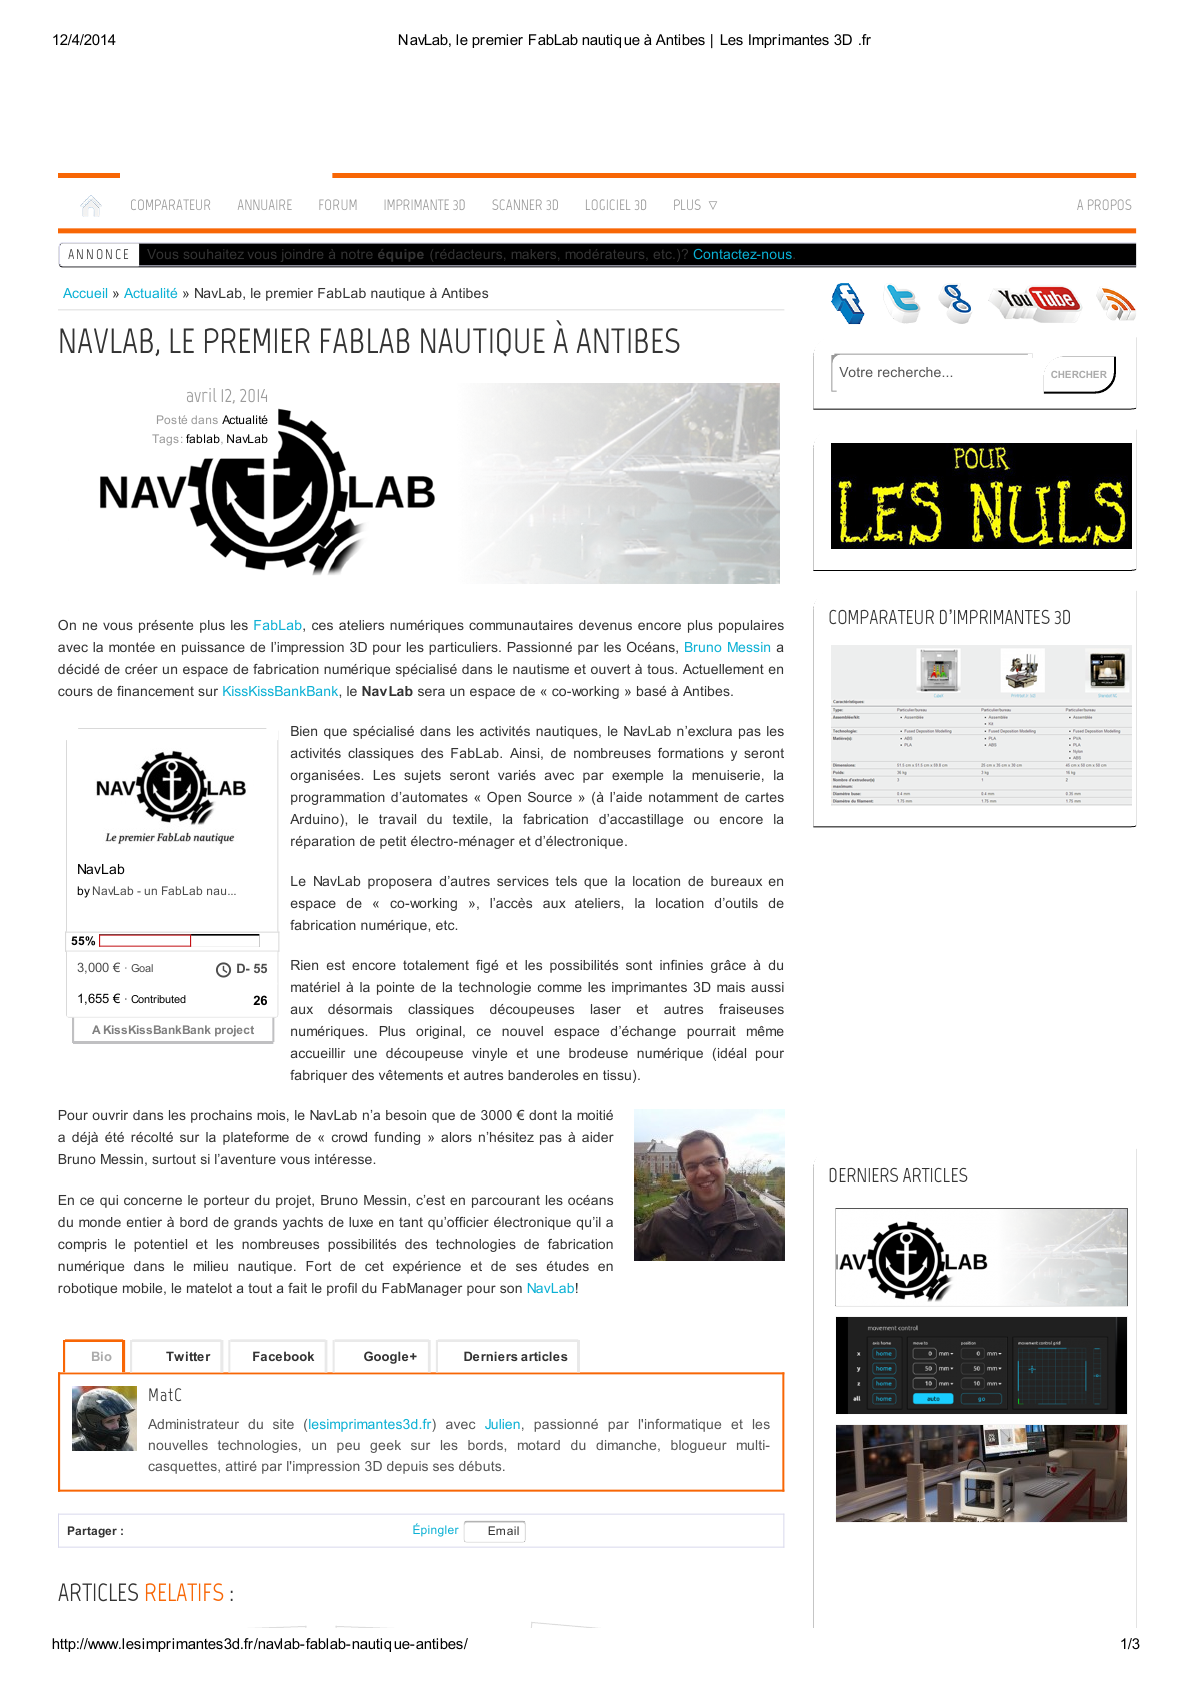 Le NavLab sur lesimprimantes3d.fr